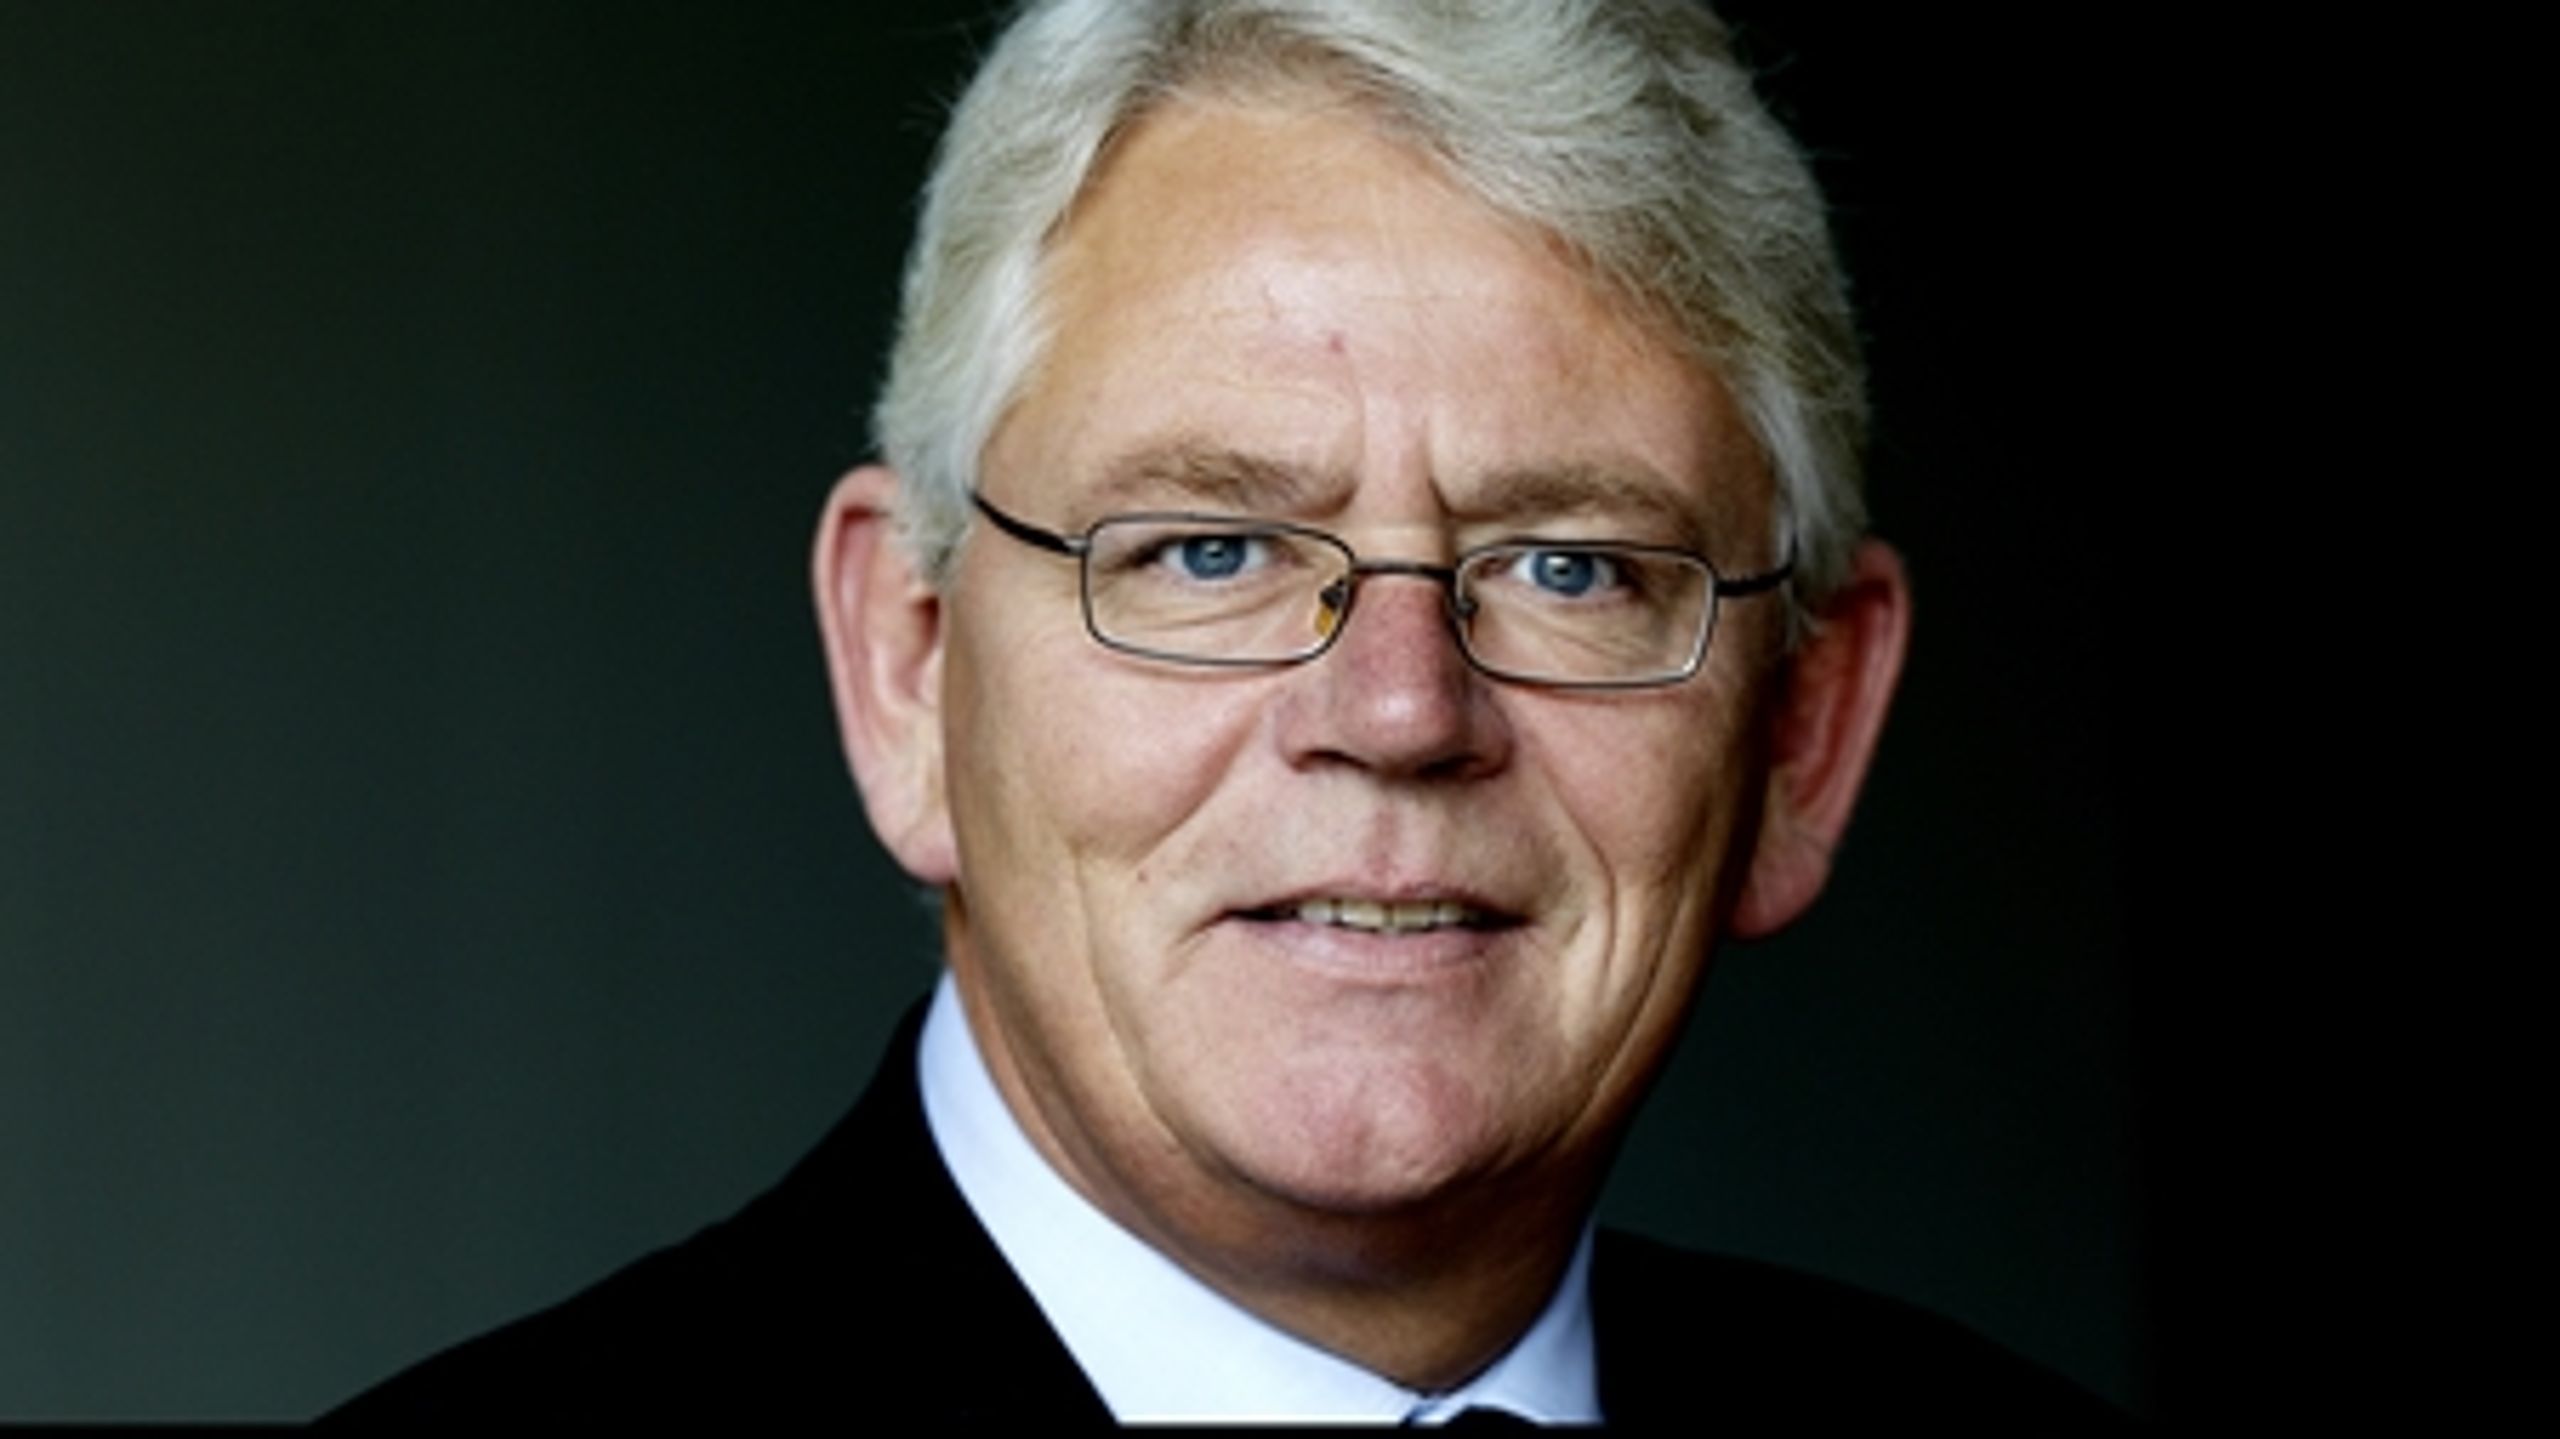 Rødovres socialdemokratiske borgmester, Erik Nielsen, er storfavorit  til at overtage formandsposten i Kommunernes Landsforening efter Horsens-borgmester Jan Trøjborg (S), der døde søndag.